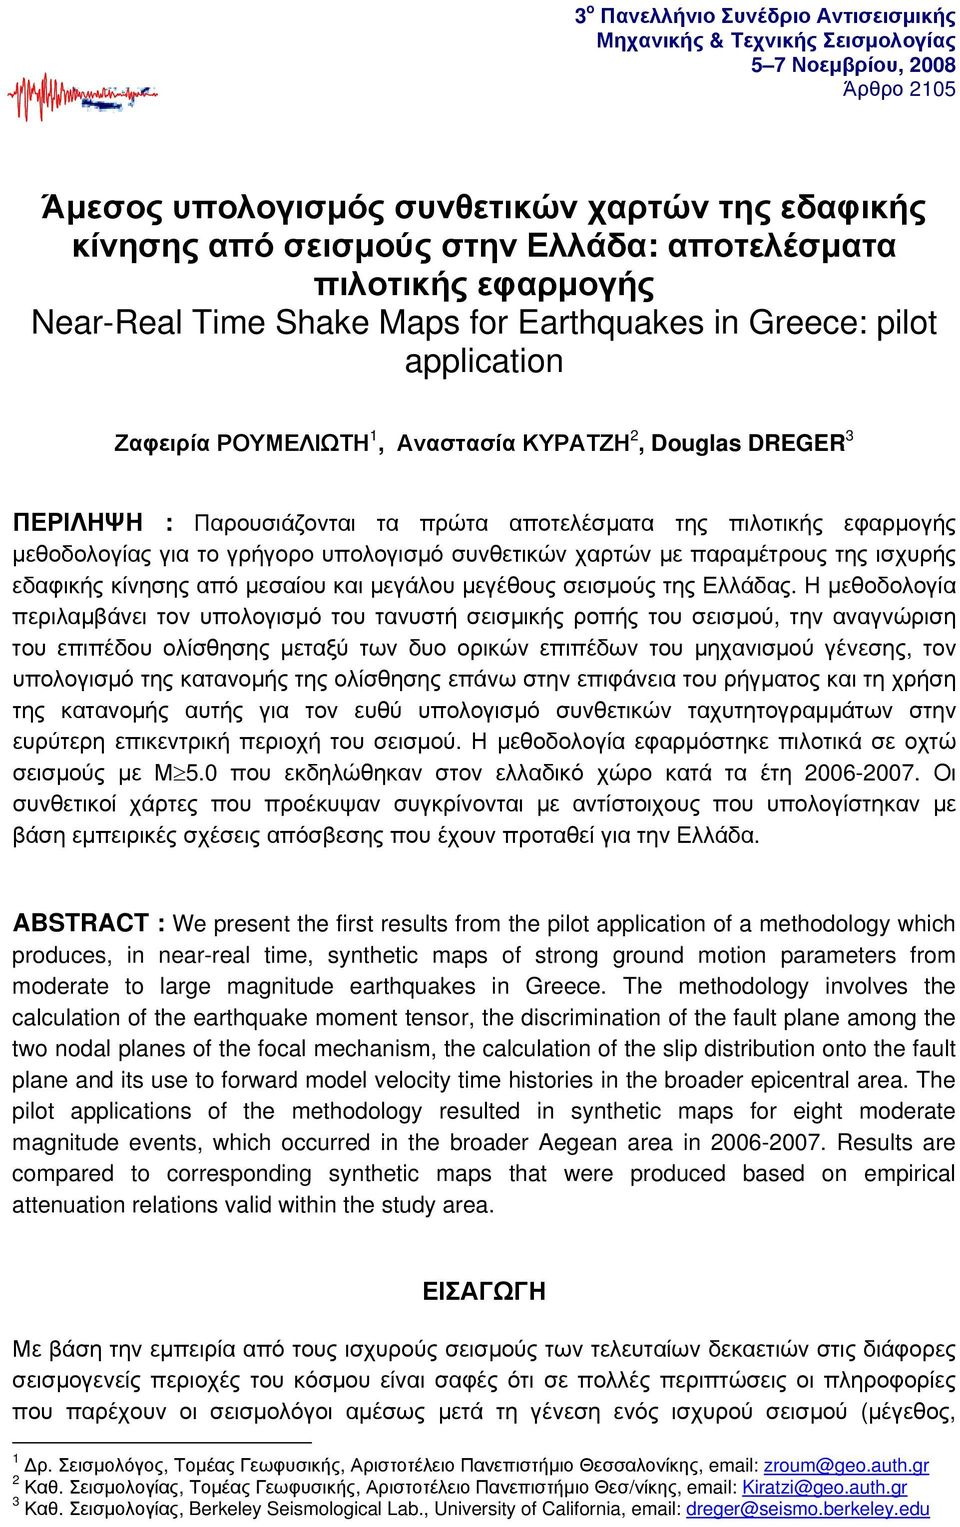 της πιλοτικής εφαρμογής μεθοδολογίας για το γρήγορο υπολογισμό συνθετικών χαρτών με παραμέτρους της ισχυρής εδαφικής κίνησης από μεσαίου και μεγάλου μεγέθους σεισμούς της Ελλάδας.